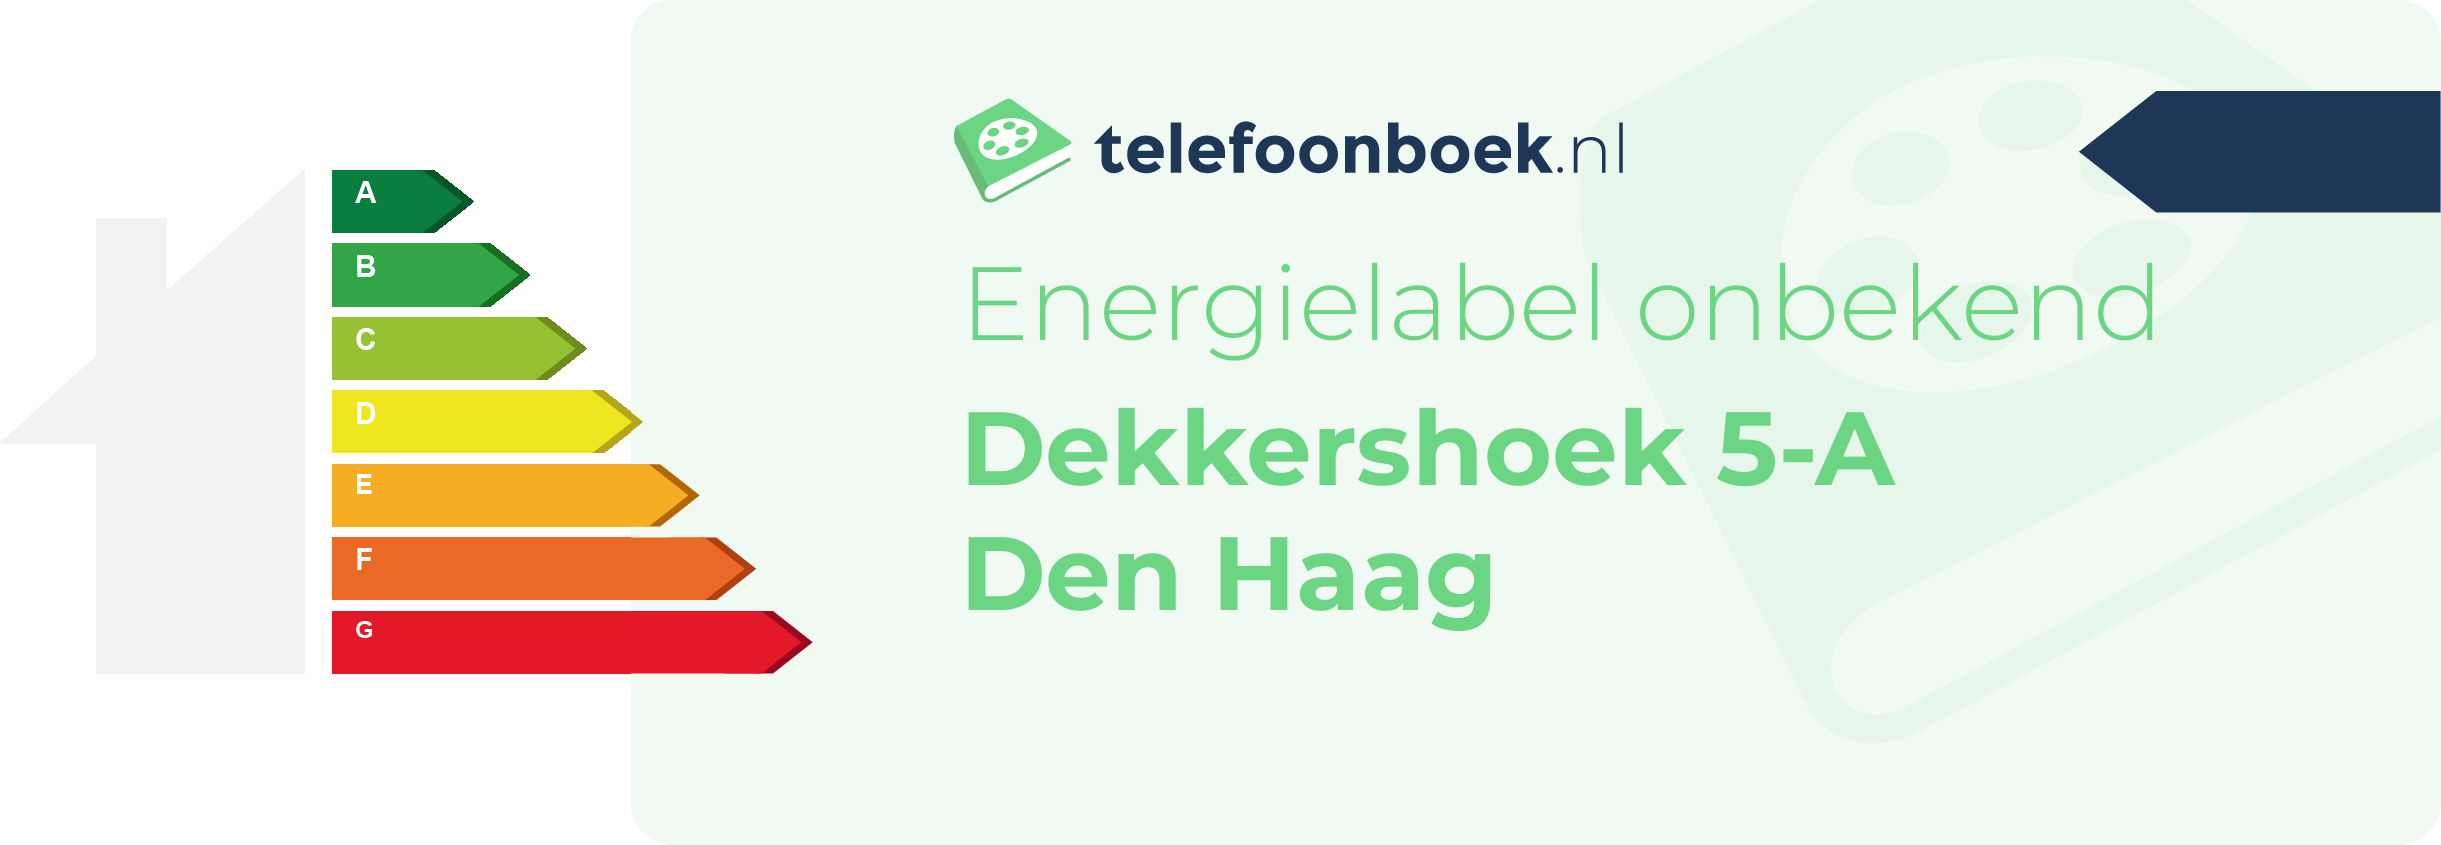 Energielabel Dekkershoek 5-A Den Haag